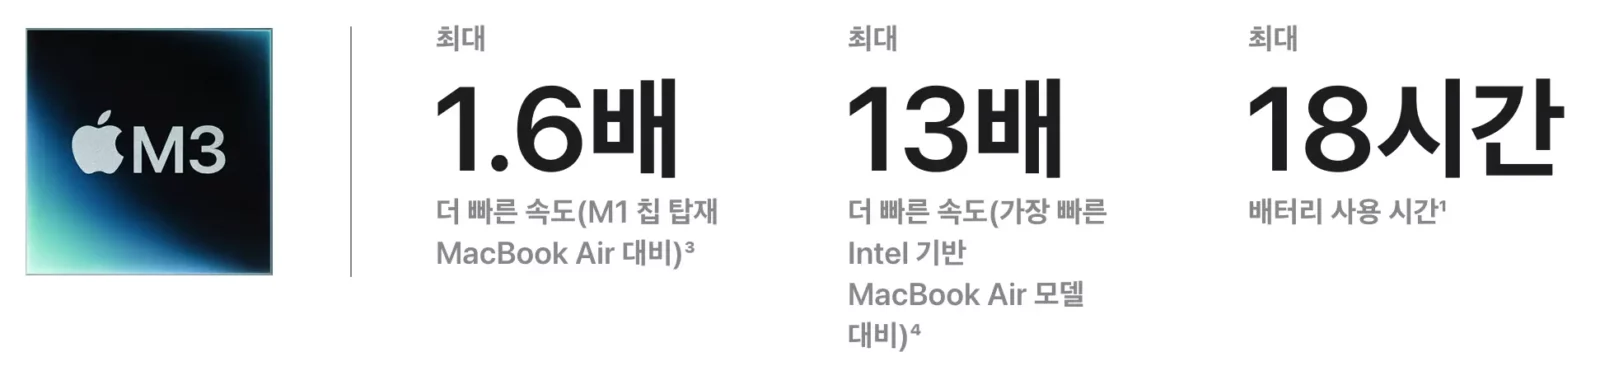 맥북에어 M3 (출처 : 애플 공식홈페이지)